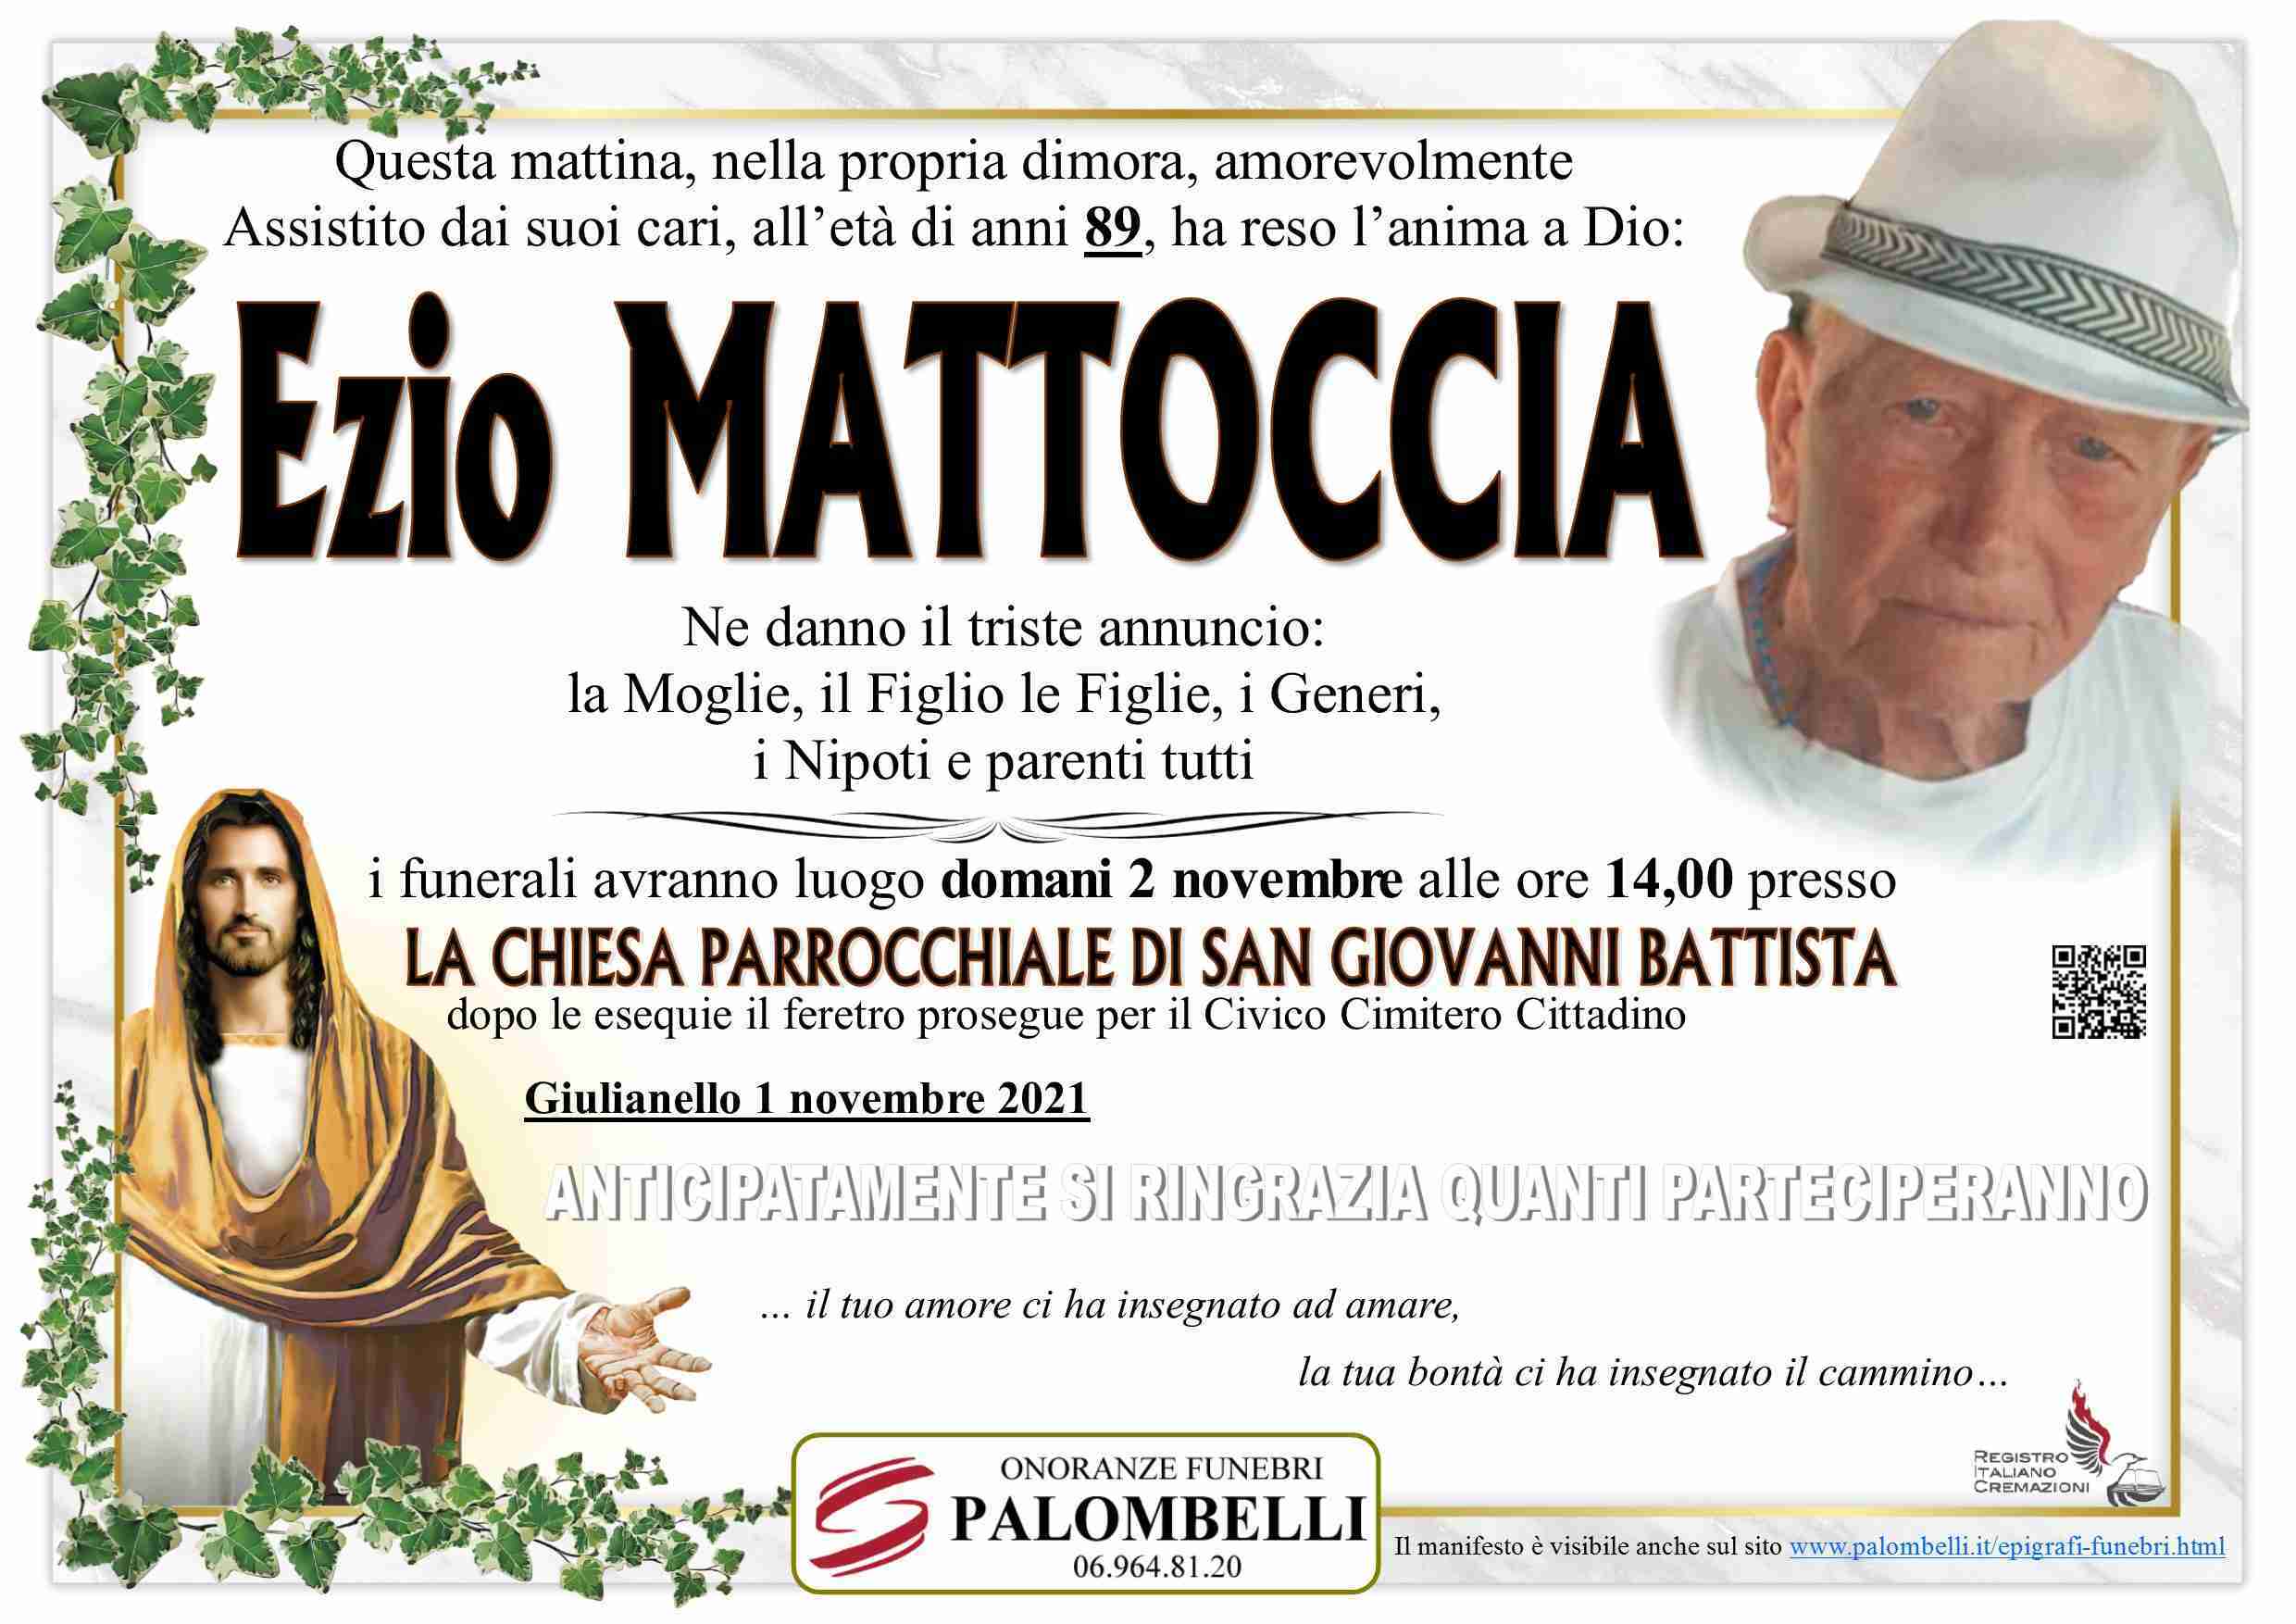 Ezio Mattoccia